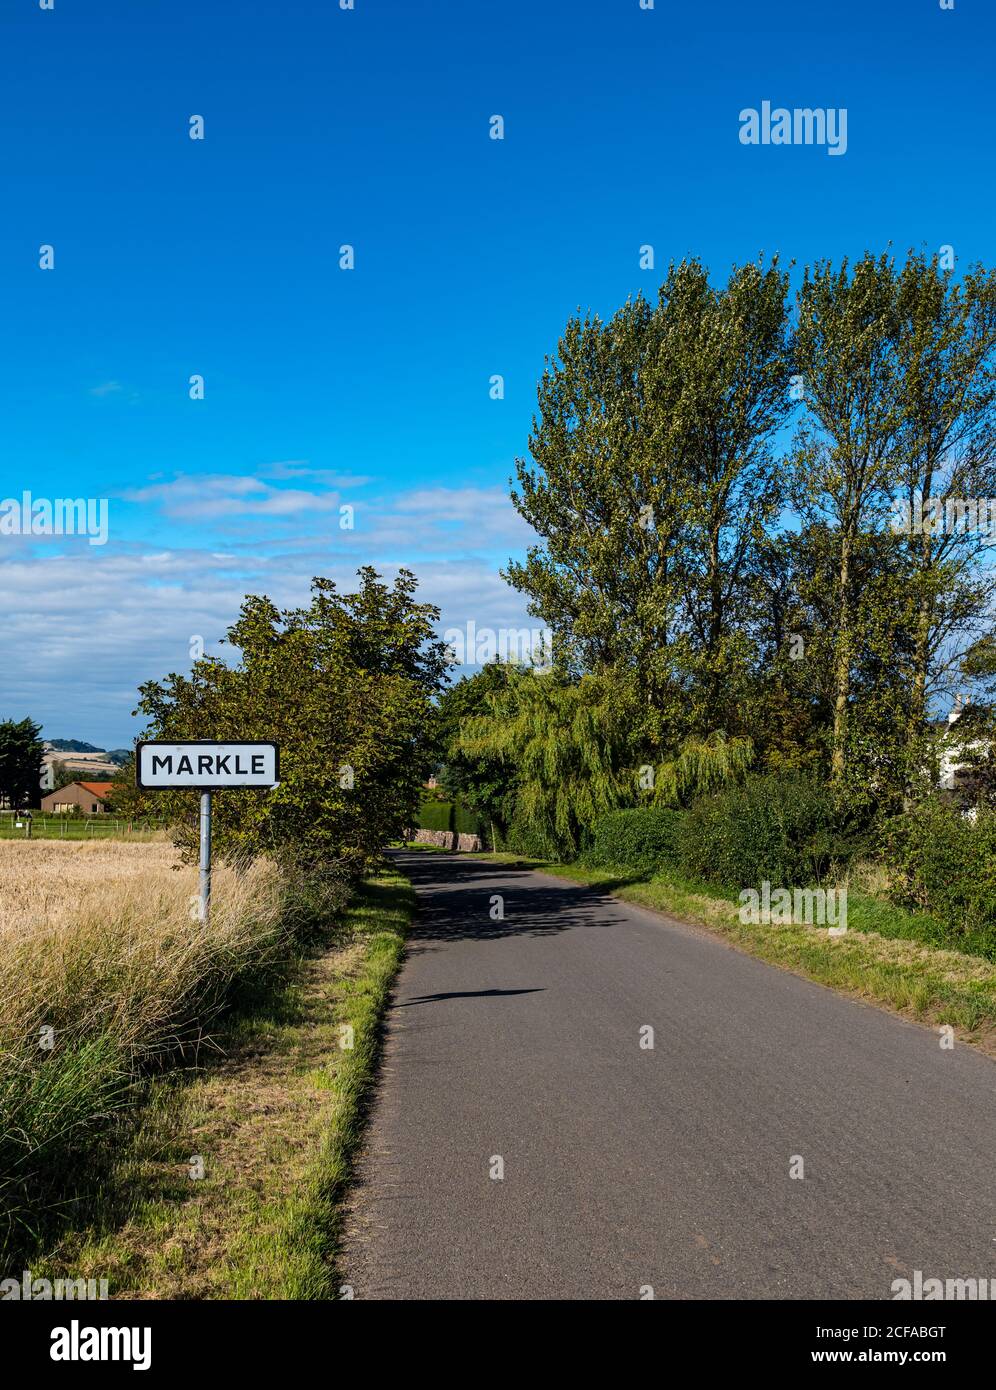 Route de campagne calme et vide avec panneau de village, Markle, East Lothian, Écosse, Royaume-Uni Banque D'Images